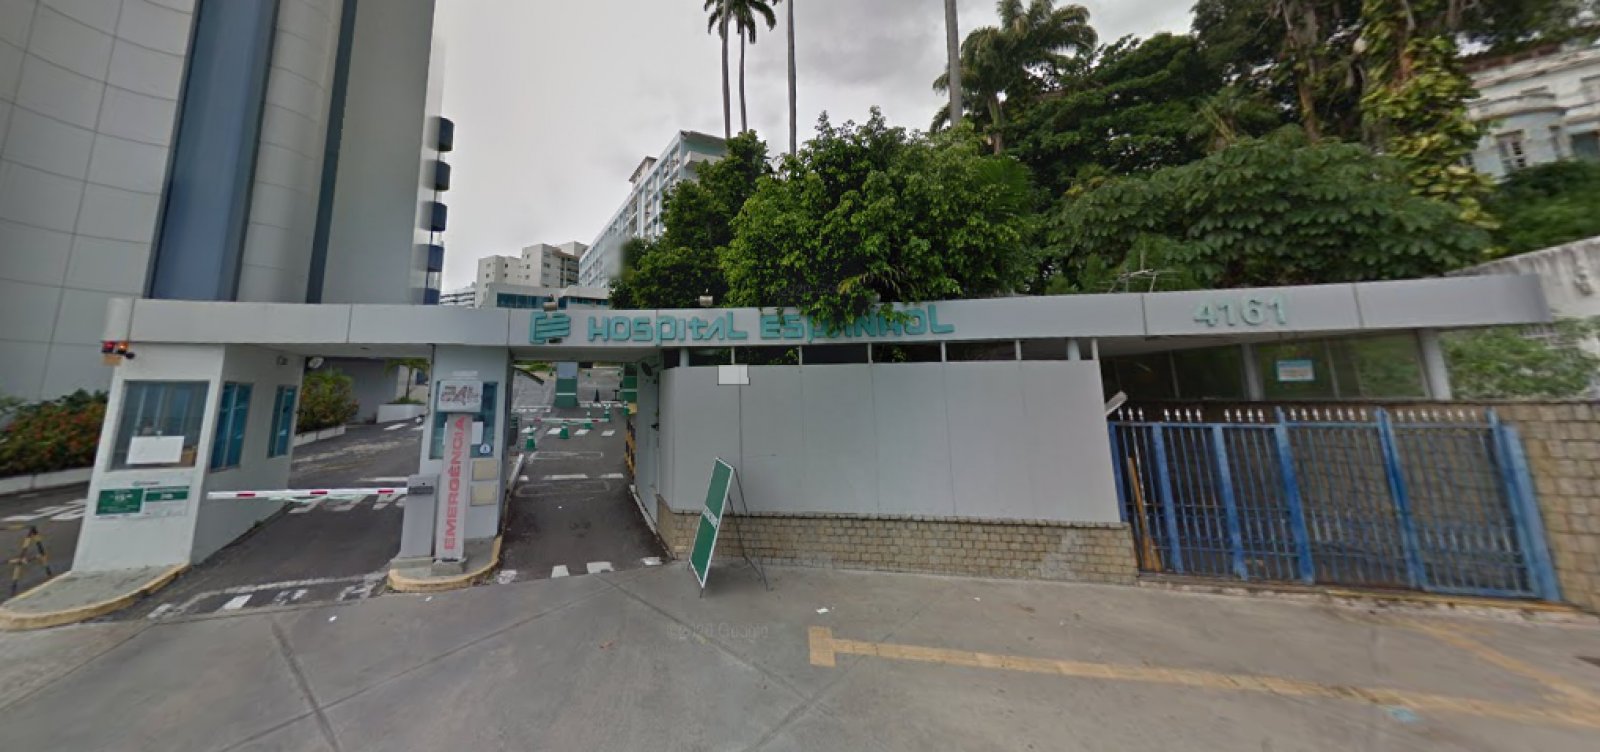 Governo da Bahia anuncia chamamento público para assumir gestão do Hospital Espanhol